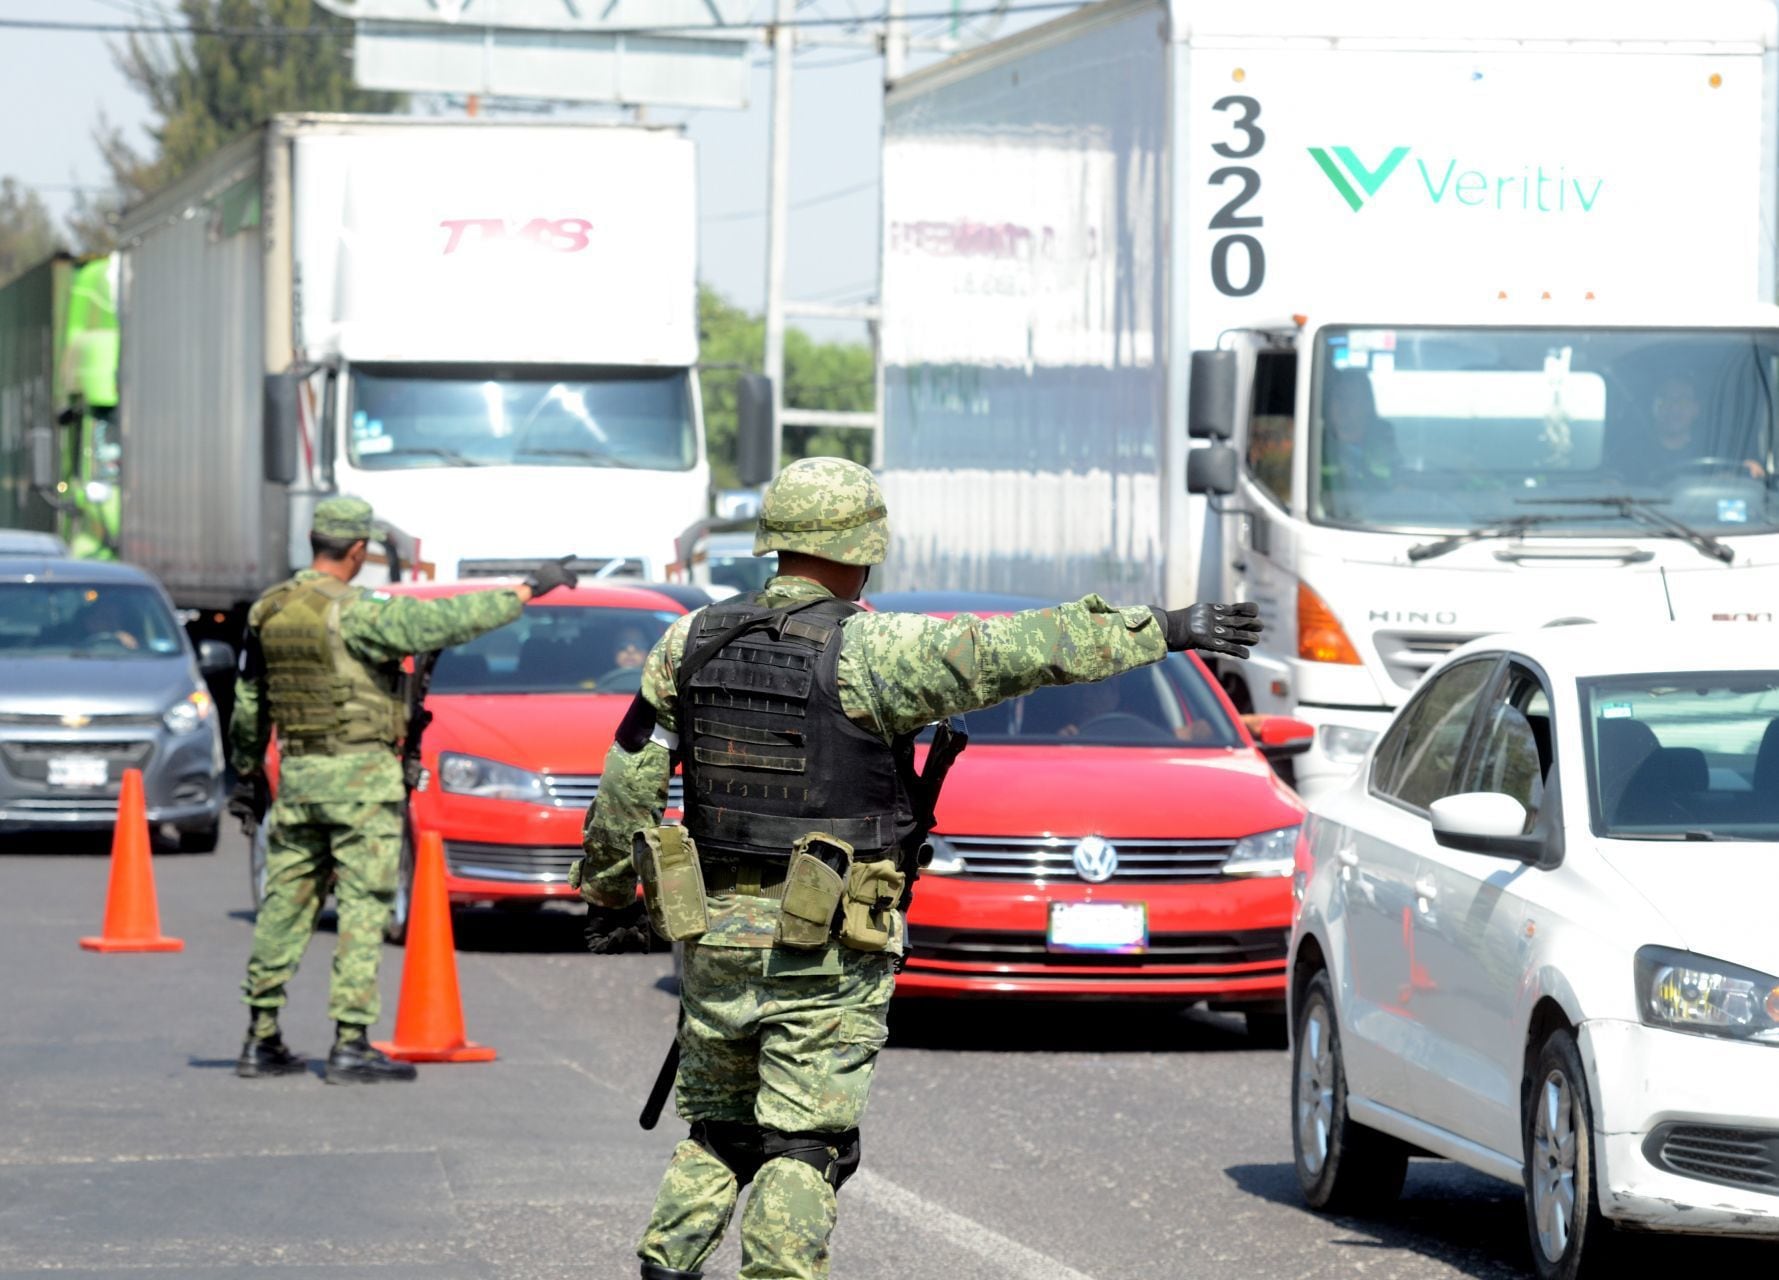 Autopista México-Querétaro en obras: Capufe anuncia del cierre parcial de esta vialidad